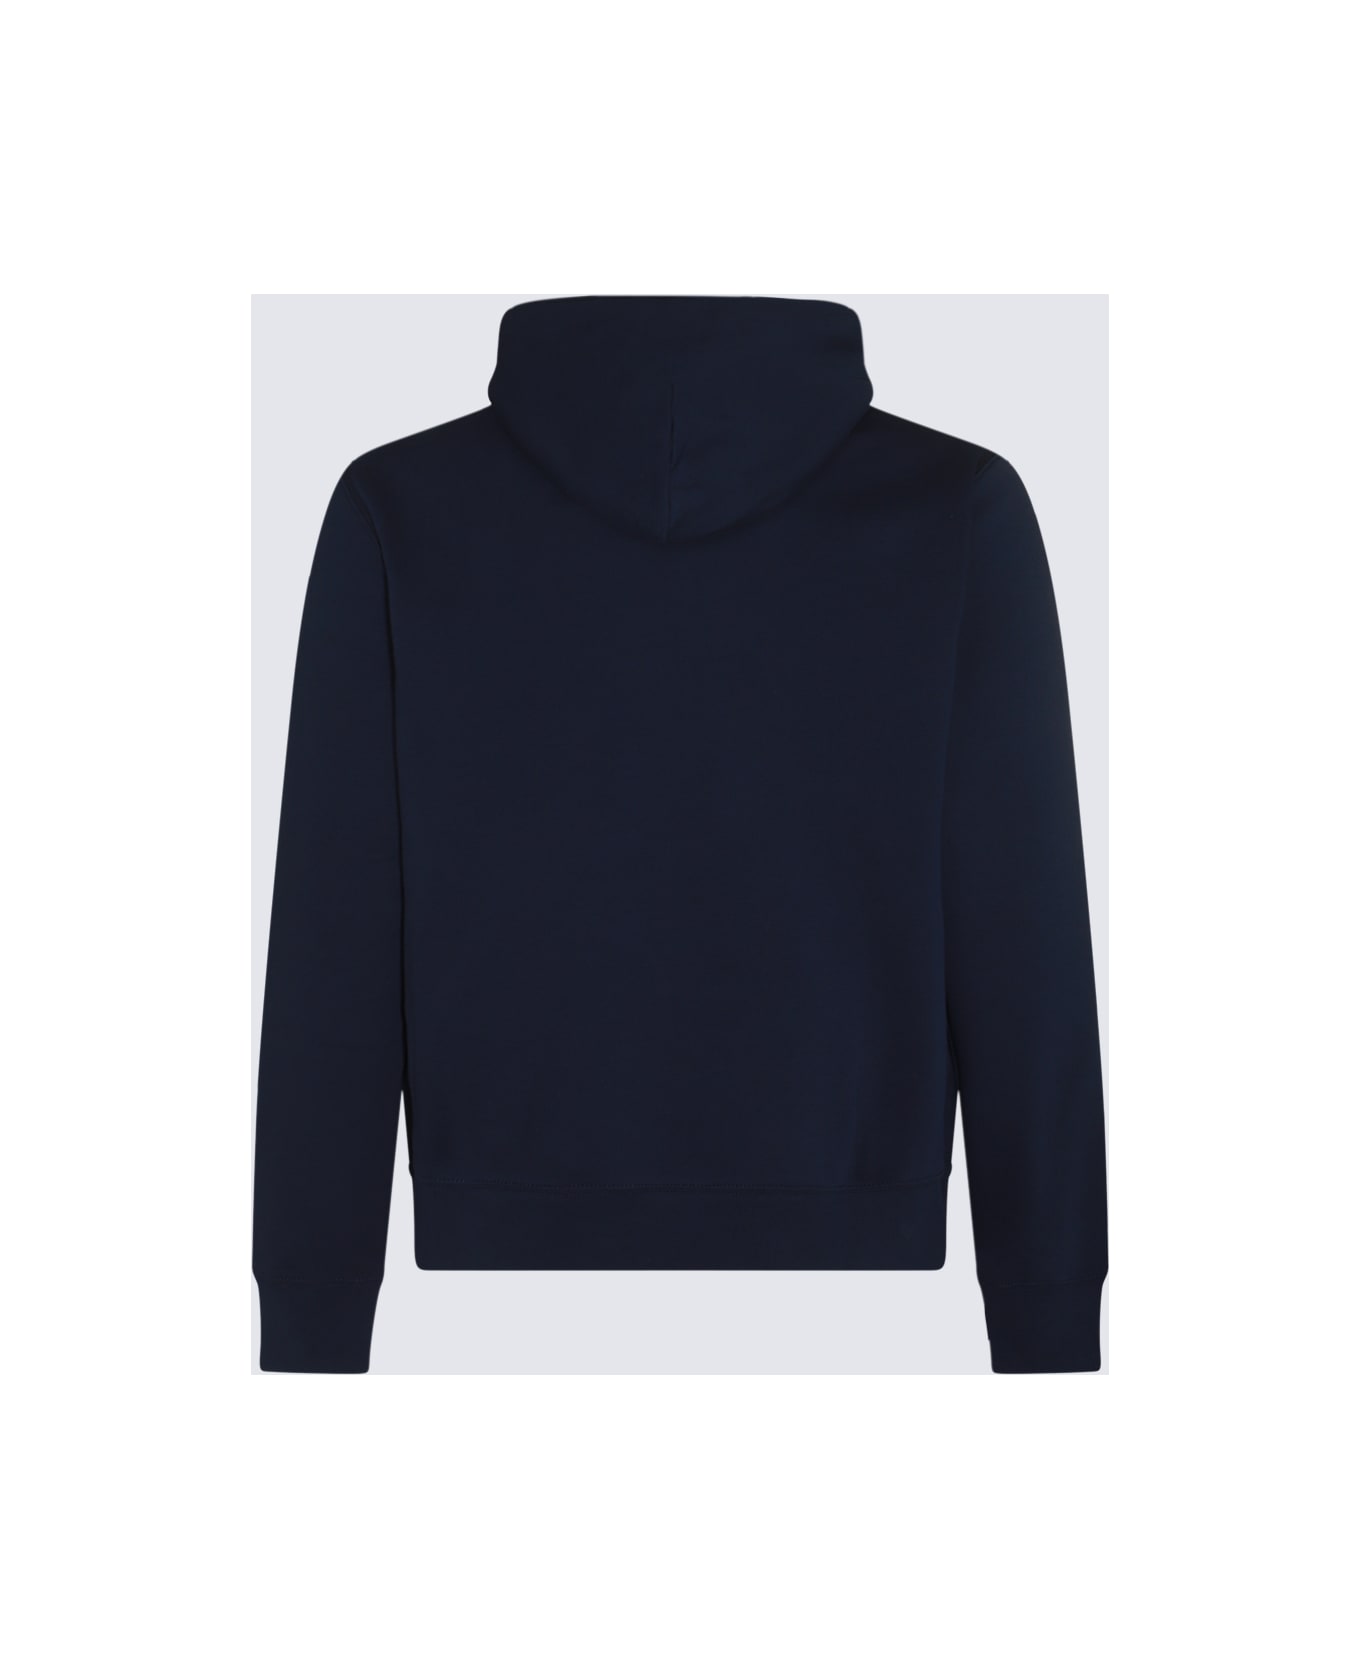 Polo Ralph Lauren Navy Blue Cotton Sweatshirt - CR23 CRUISE NAVY PAINT BEAR フリース